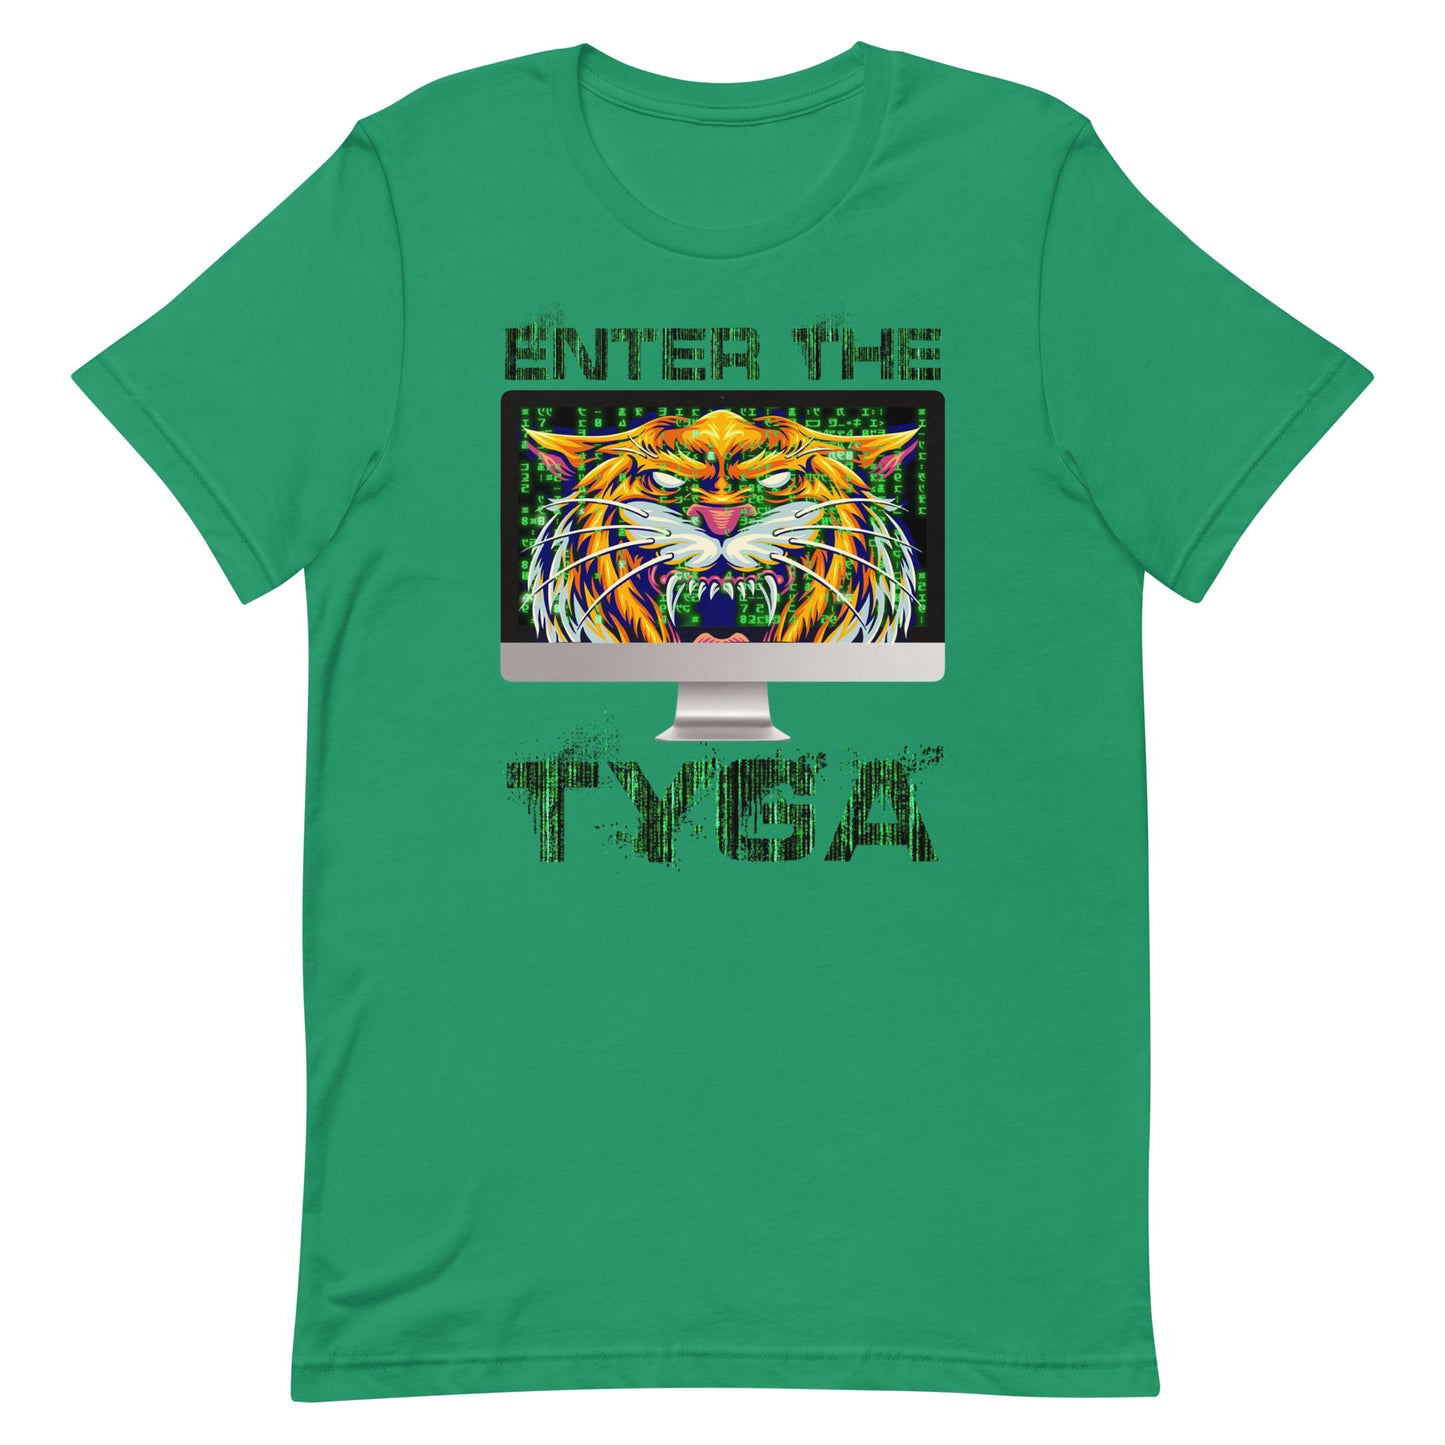 Enter the Tyga! Unisex t-shirt